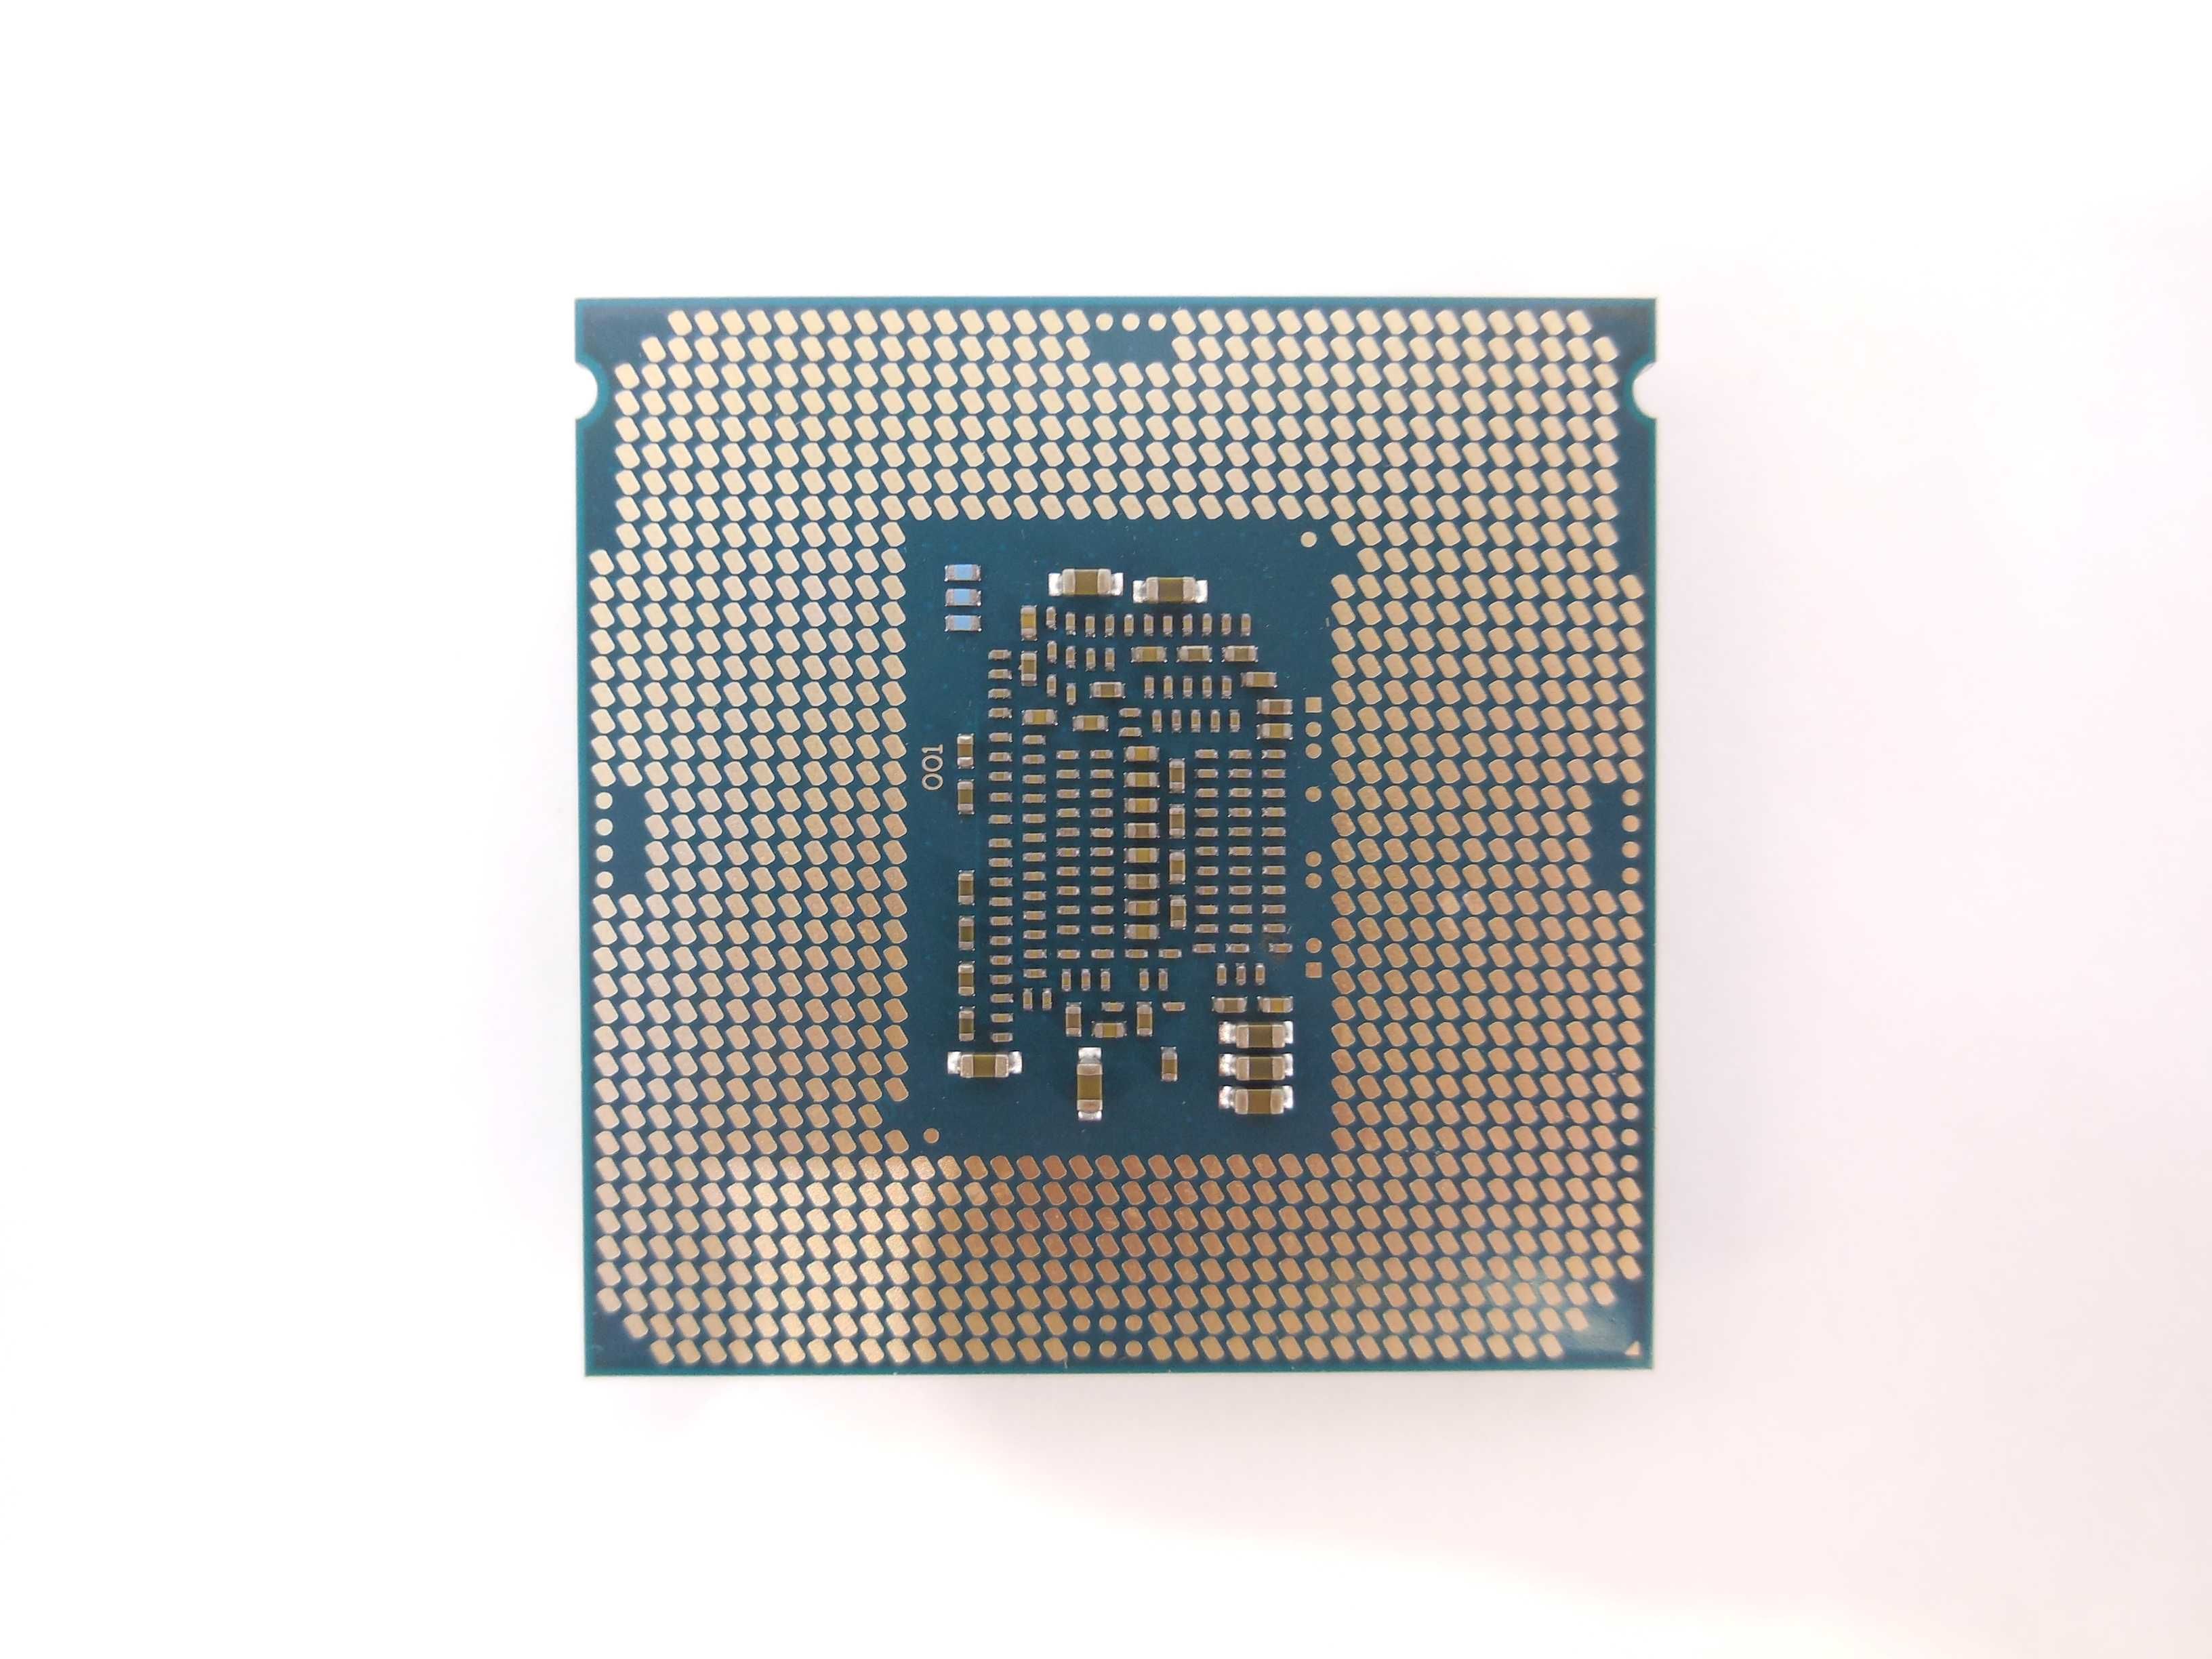 Брендовый процессор Intel Pentium G4400 3.30Hz.LGA1151.2 ядра 2 потока